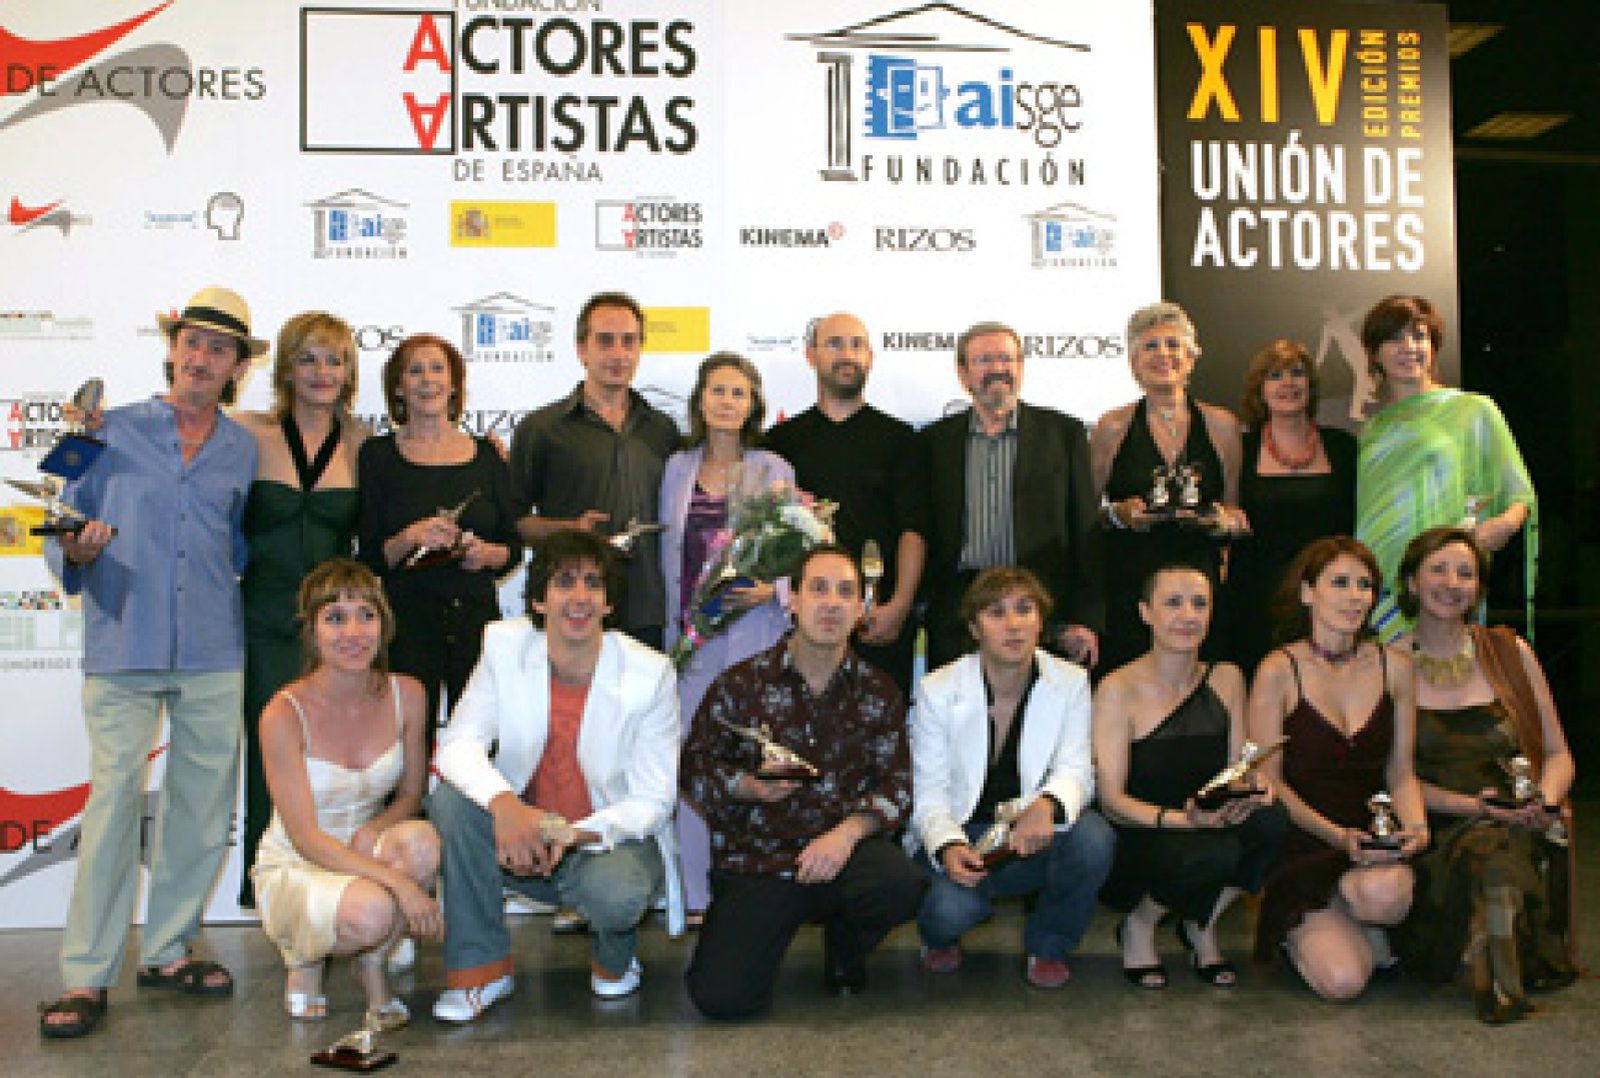 Foto: La gala presentada por la actriz Concha Velasco y el grupo de teatro Quésquíspás, se celebró en el Palacio de Congresos de Madrid.